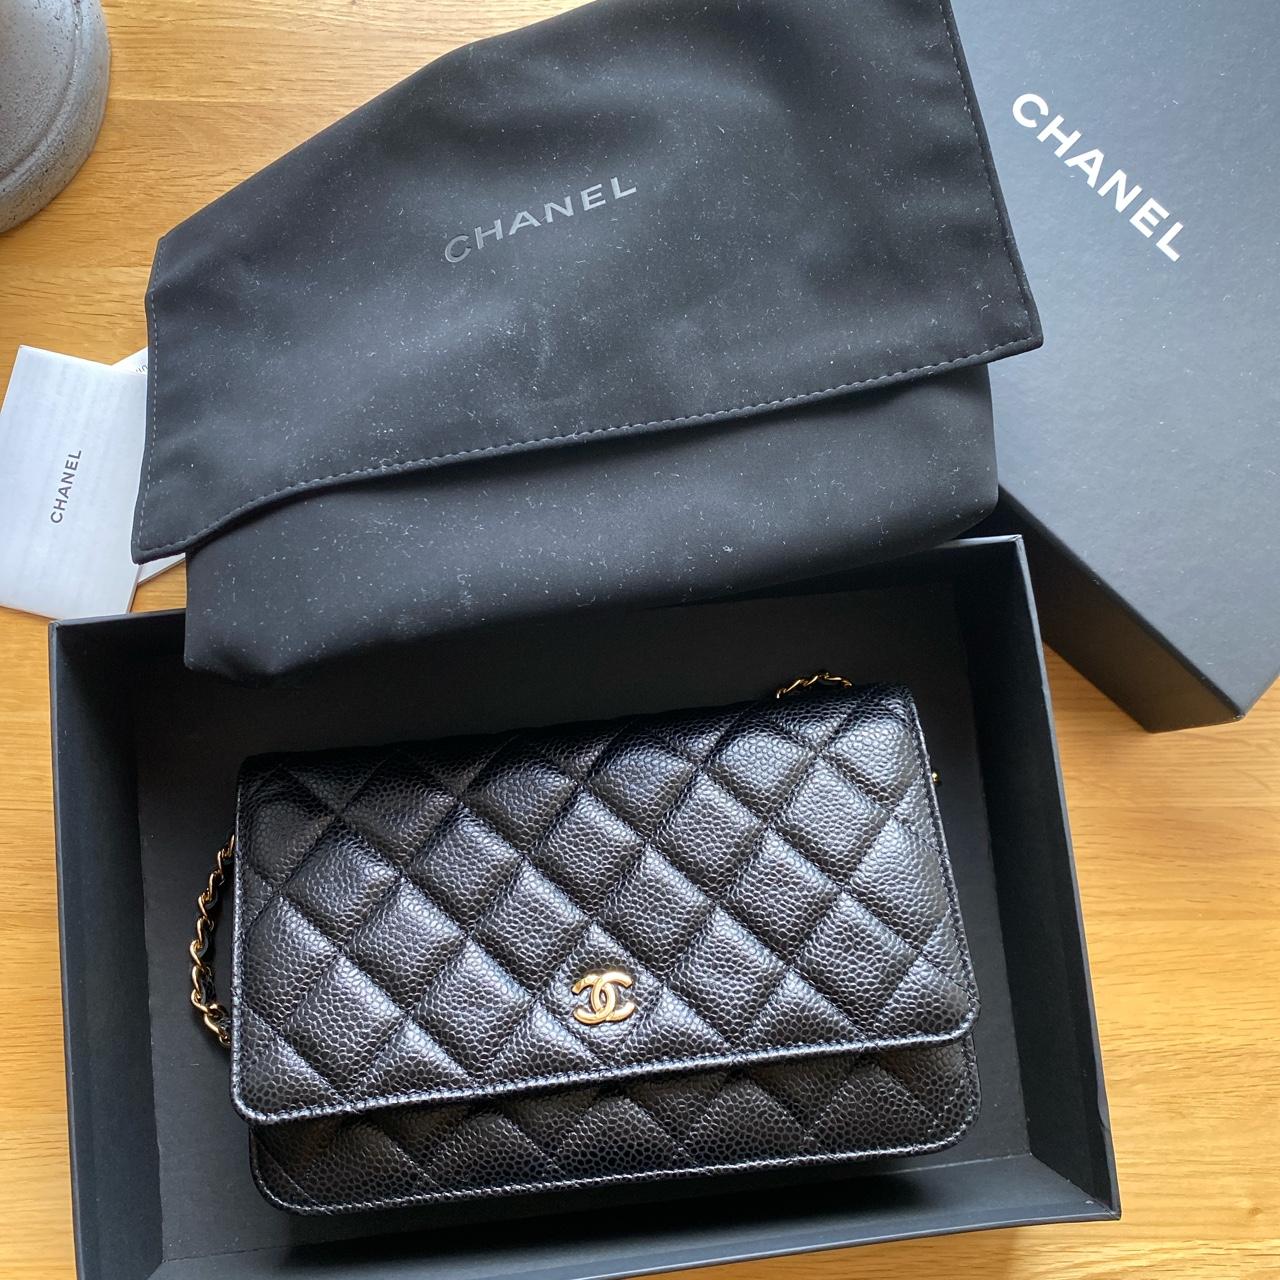 Chanel Vintage Large Quilted Flap Bag Black Gold Shoulder Bag